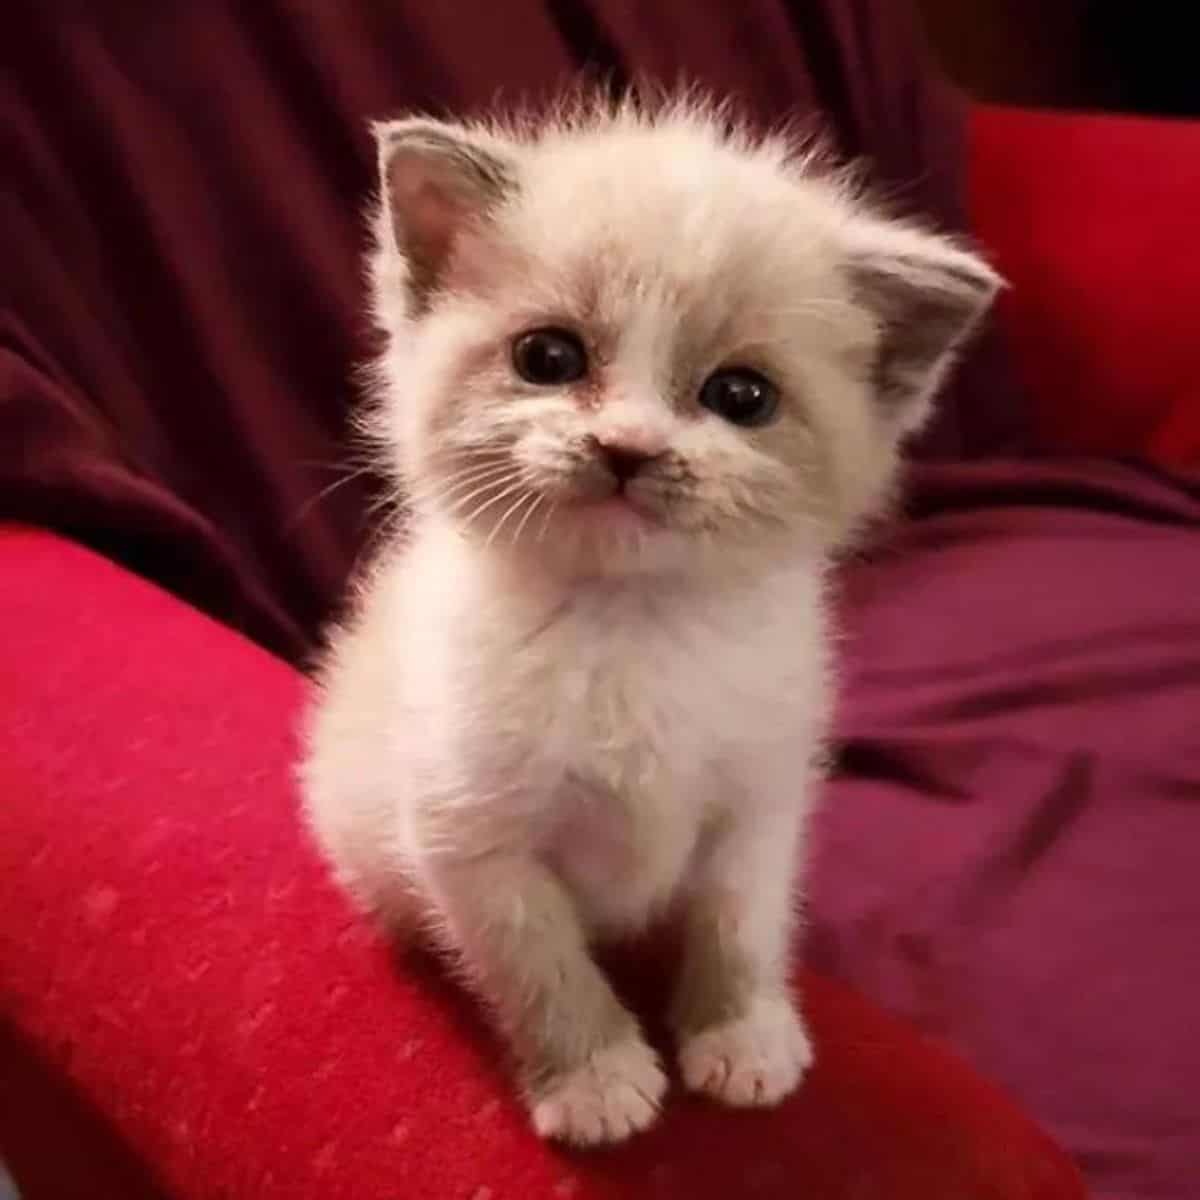 viral foster kitten